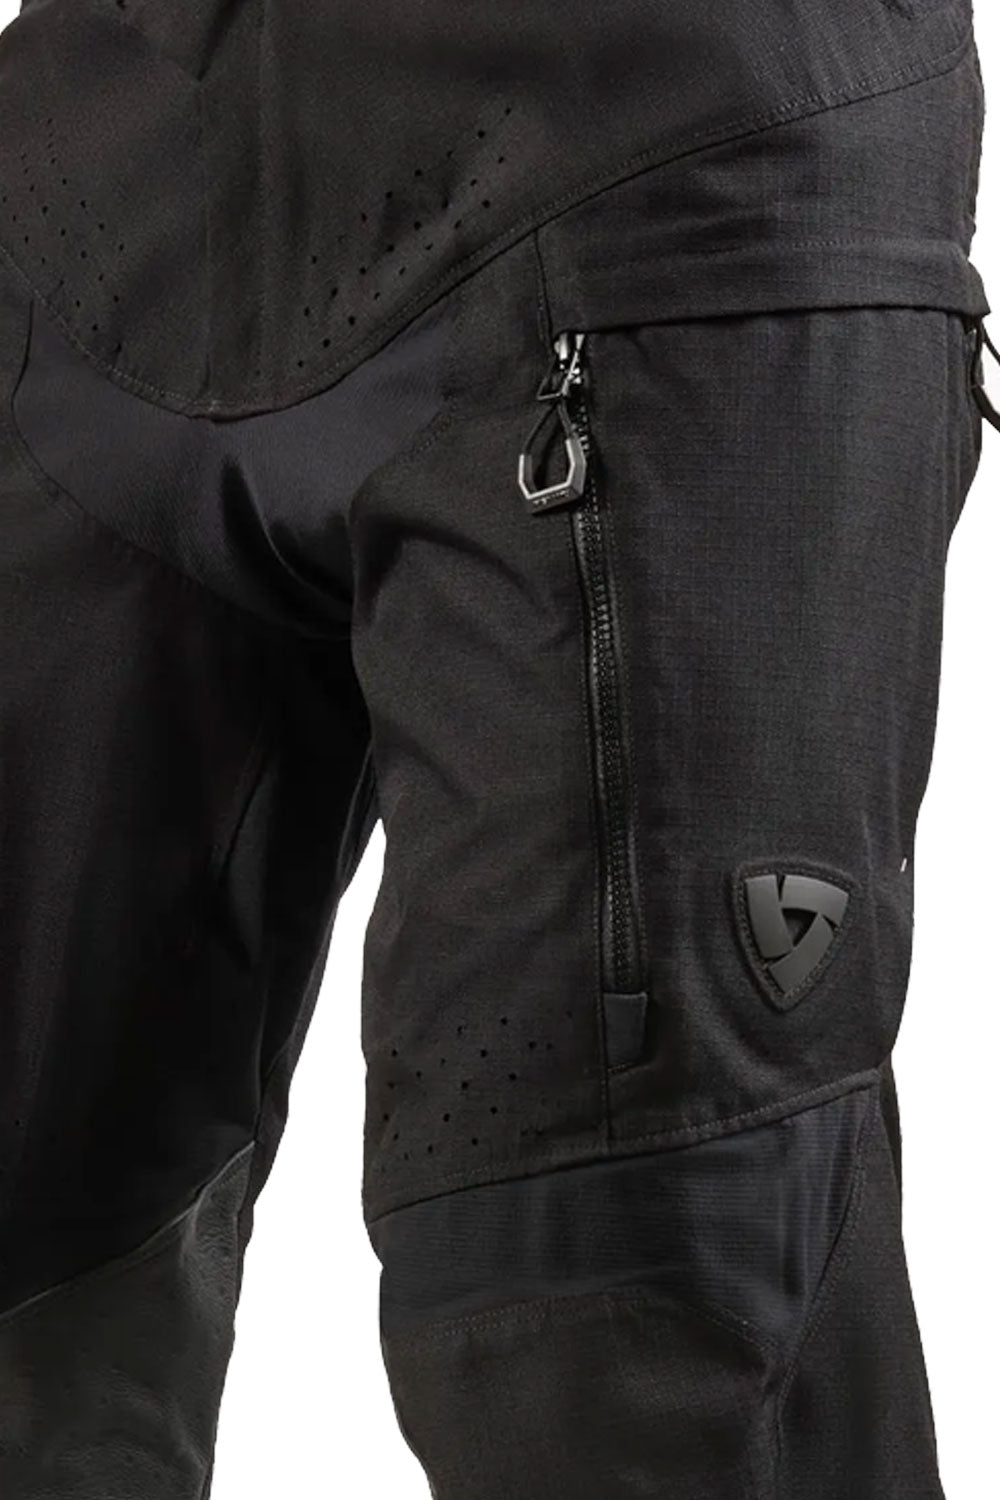 REV'IT! Continent Men's Black Textile Motorcycle Pants#N#– Moto Est.